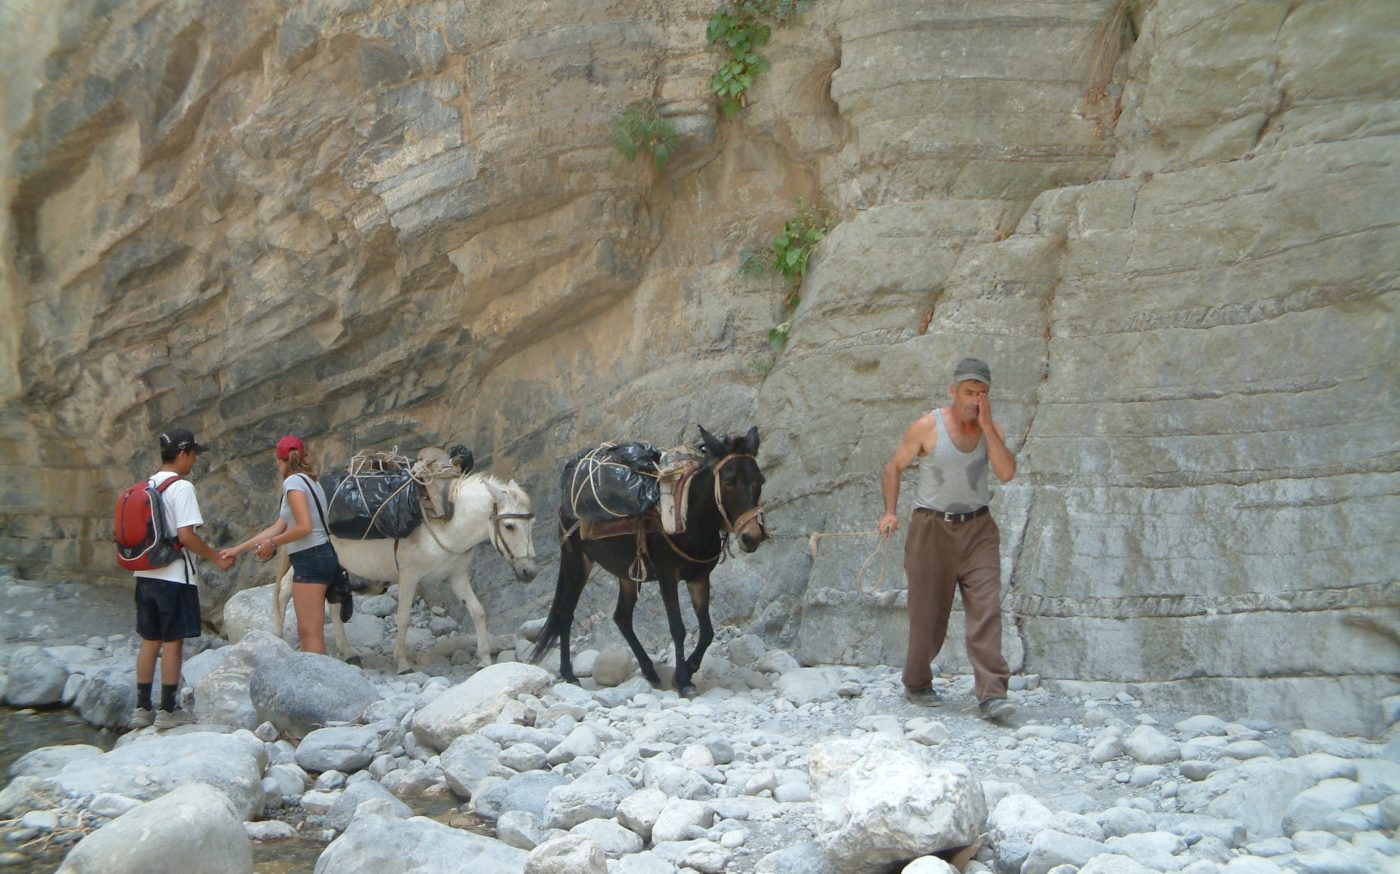 Crete's Samaria Gorge - Crete facts